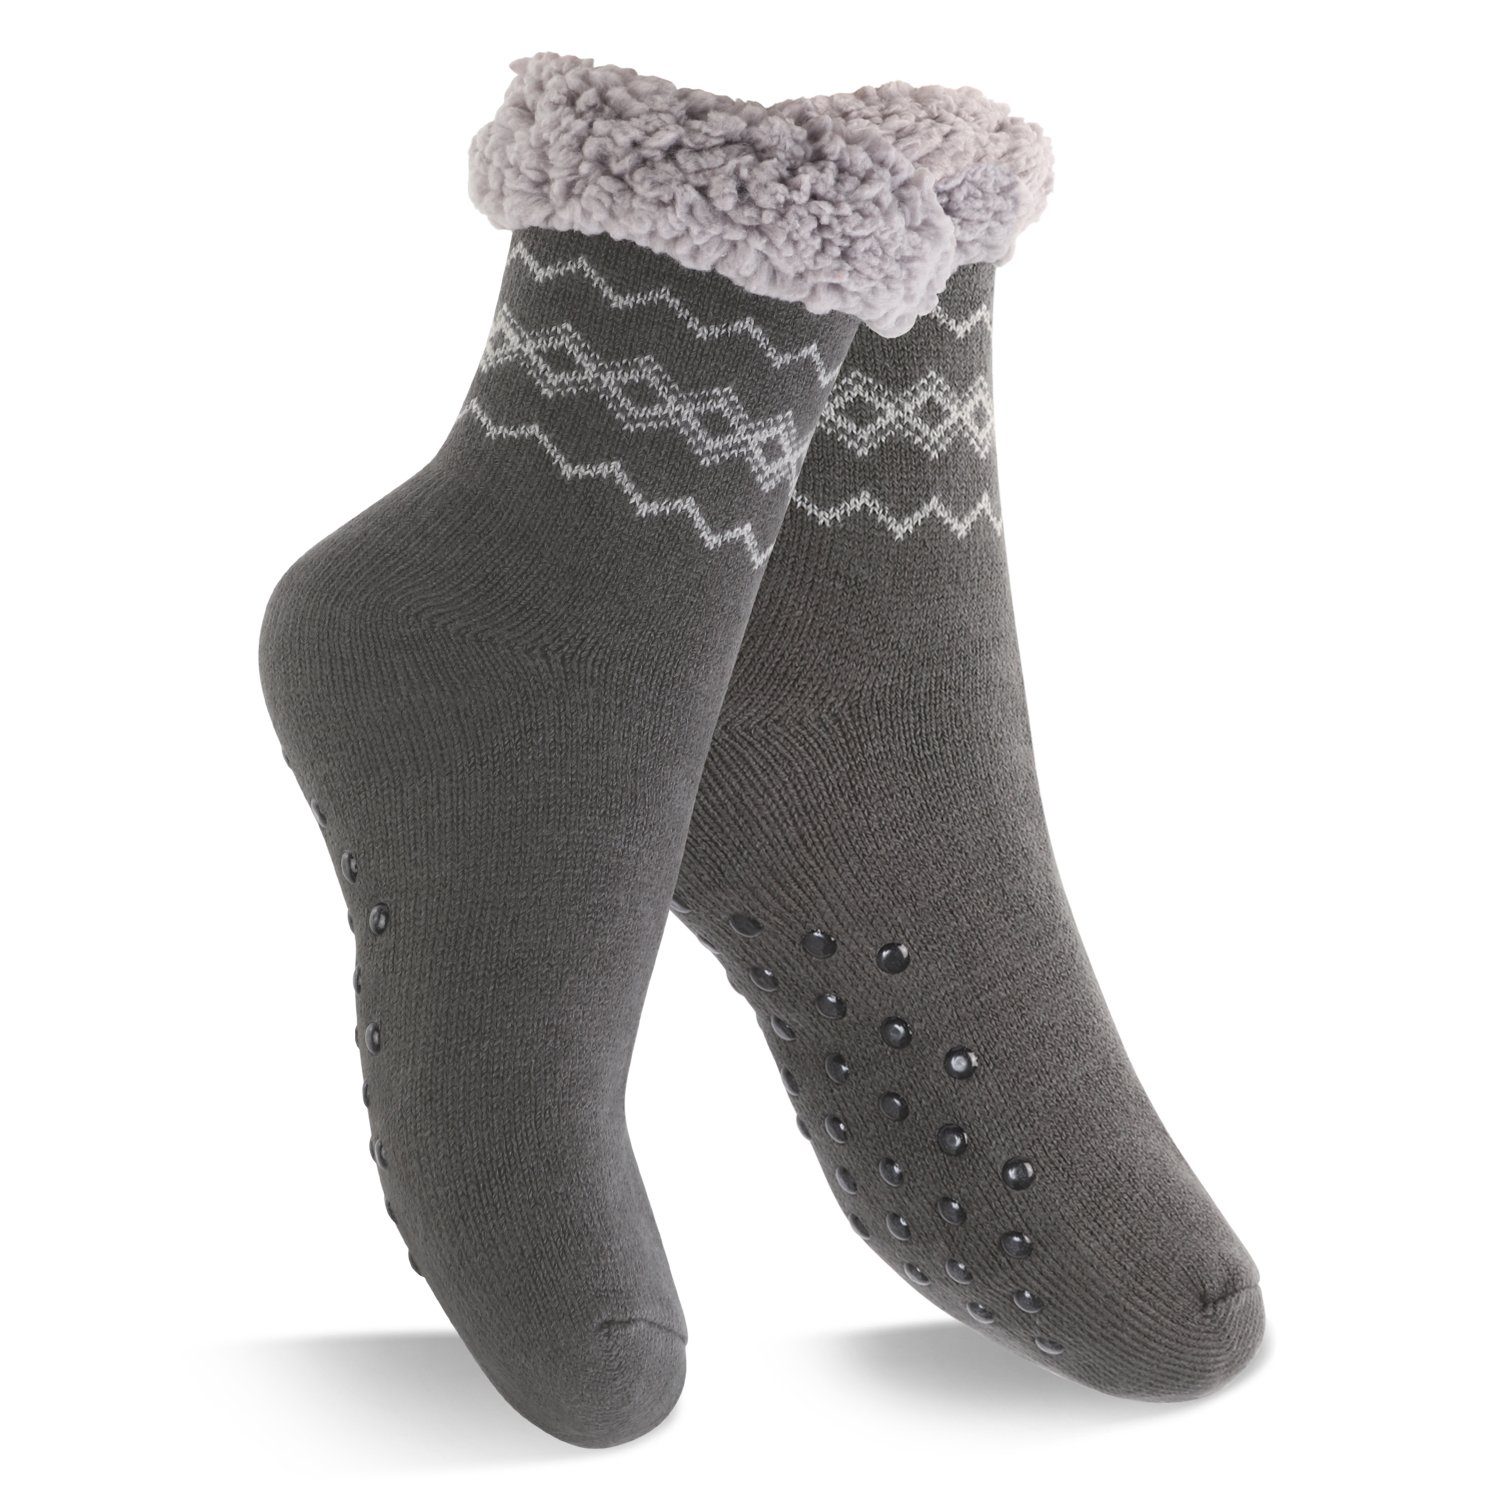 Footstar ABS-Socken Winter Haussocken für Damen & Herren (1/2 Paar) Kuschelsocken Anthrazit